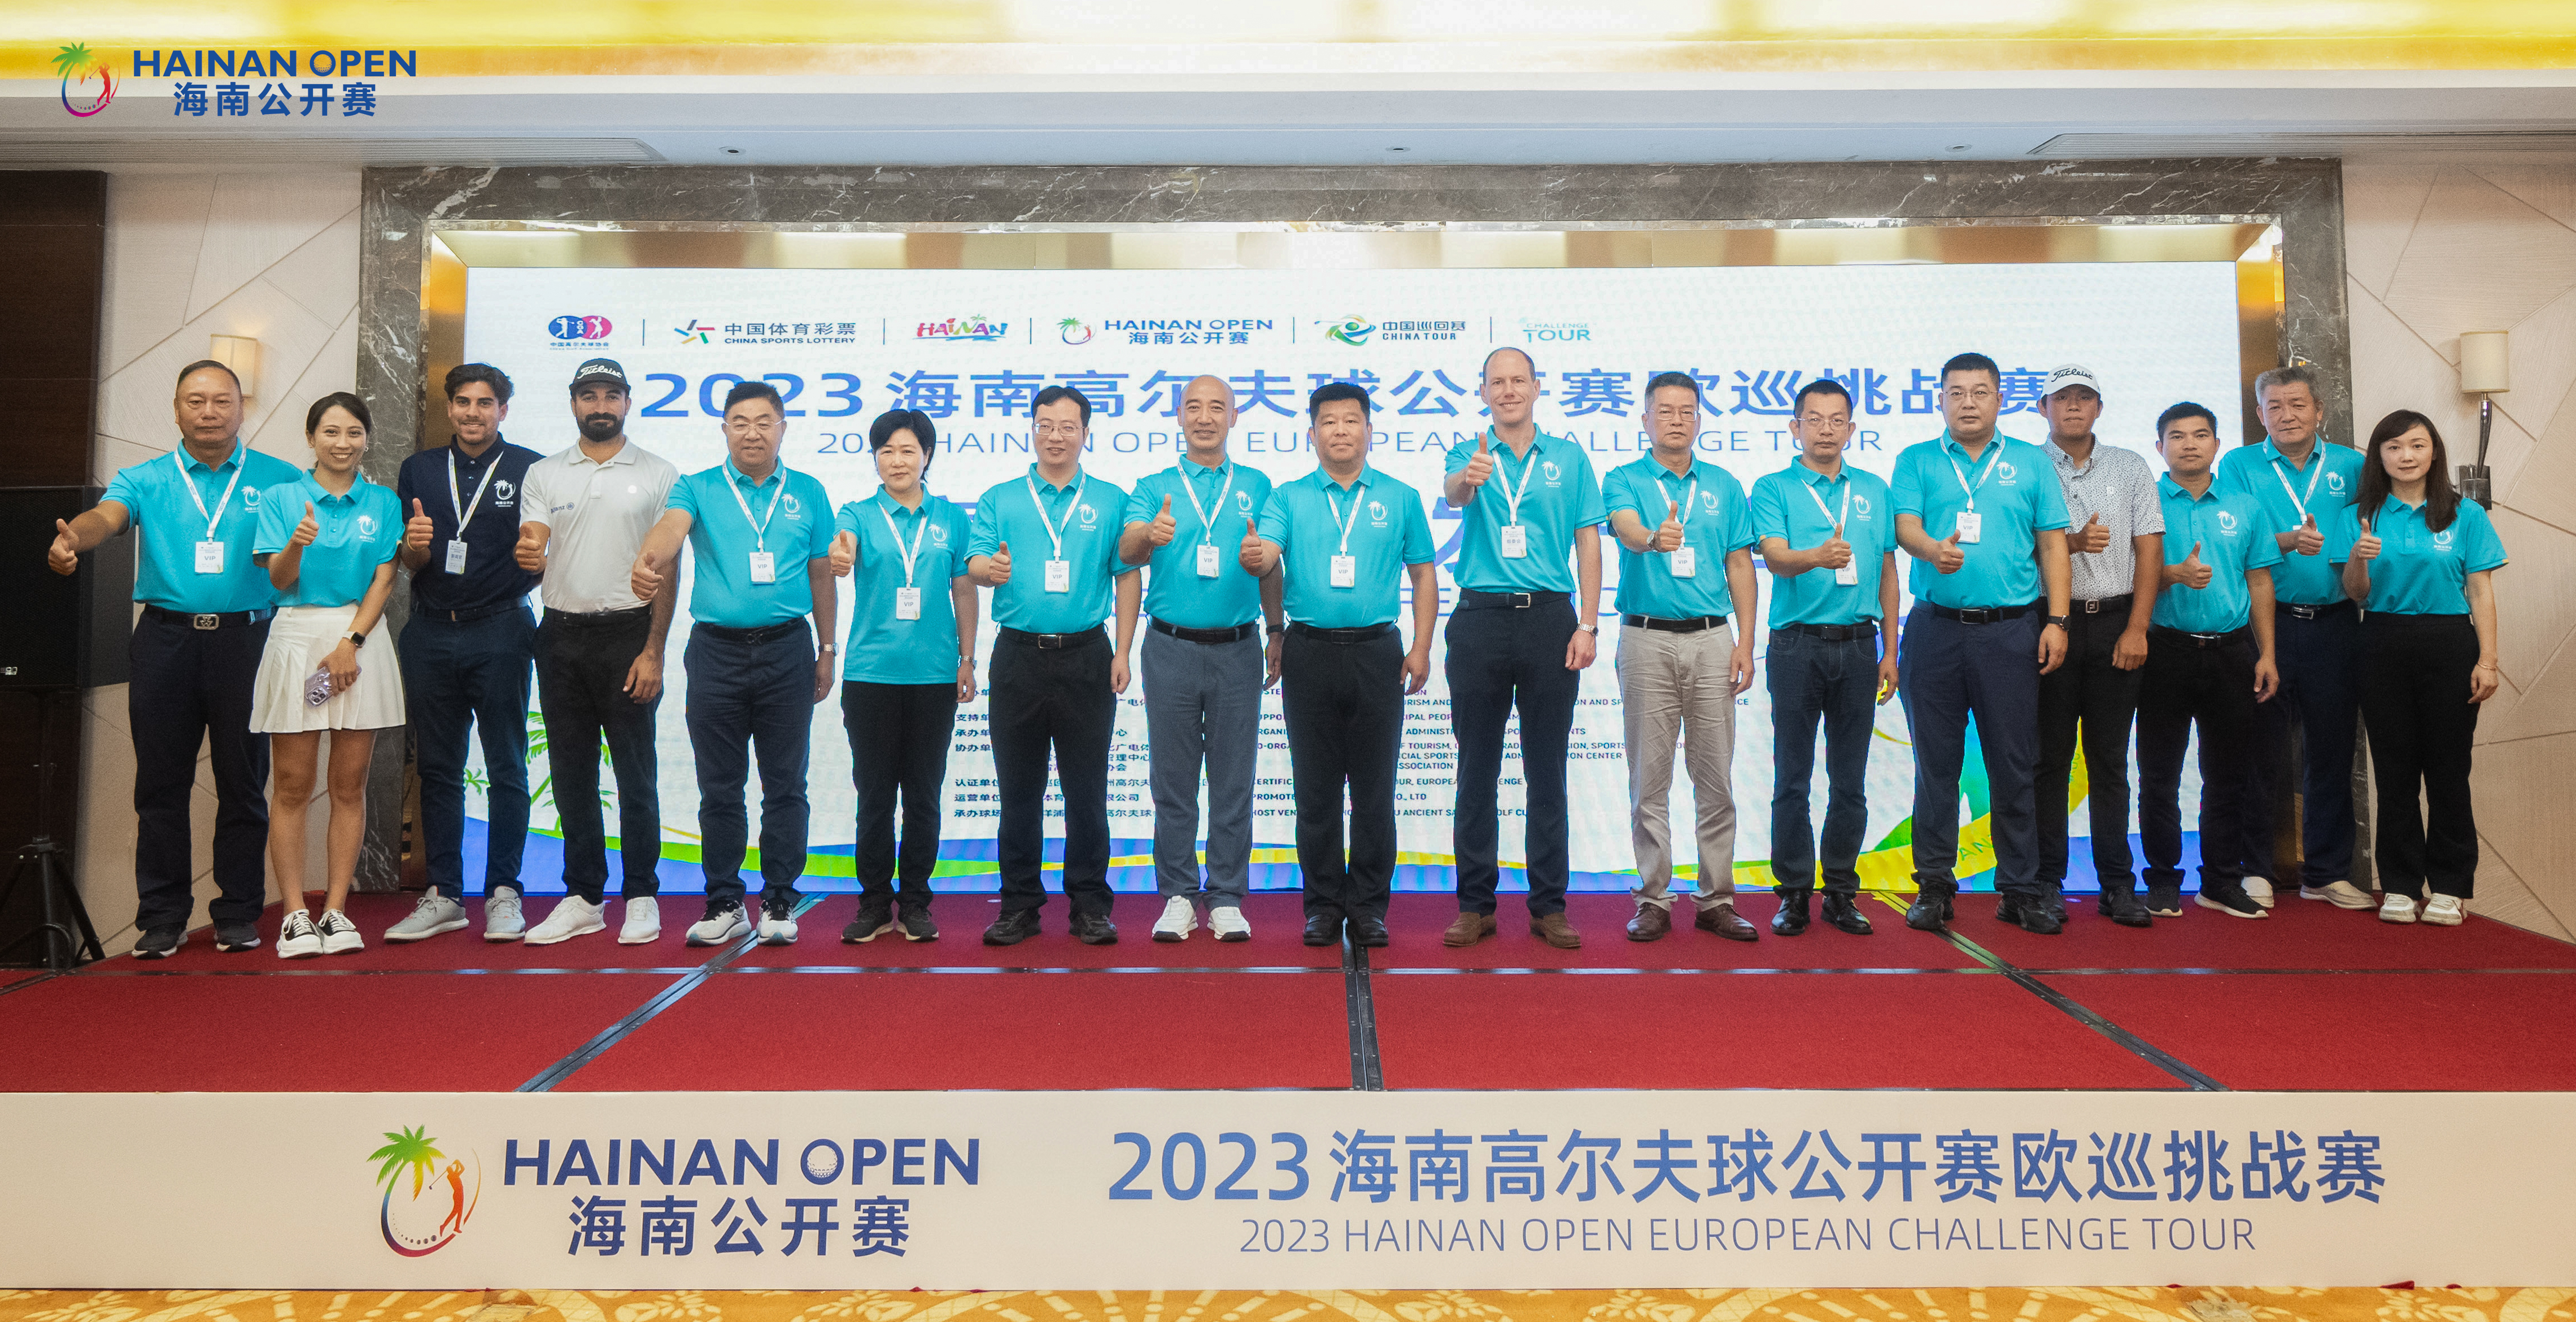 2023海南高尔夫球公开赛欧巡挑战赛新闻发布会在儋州召开